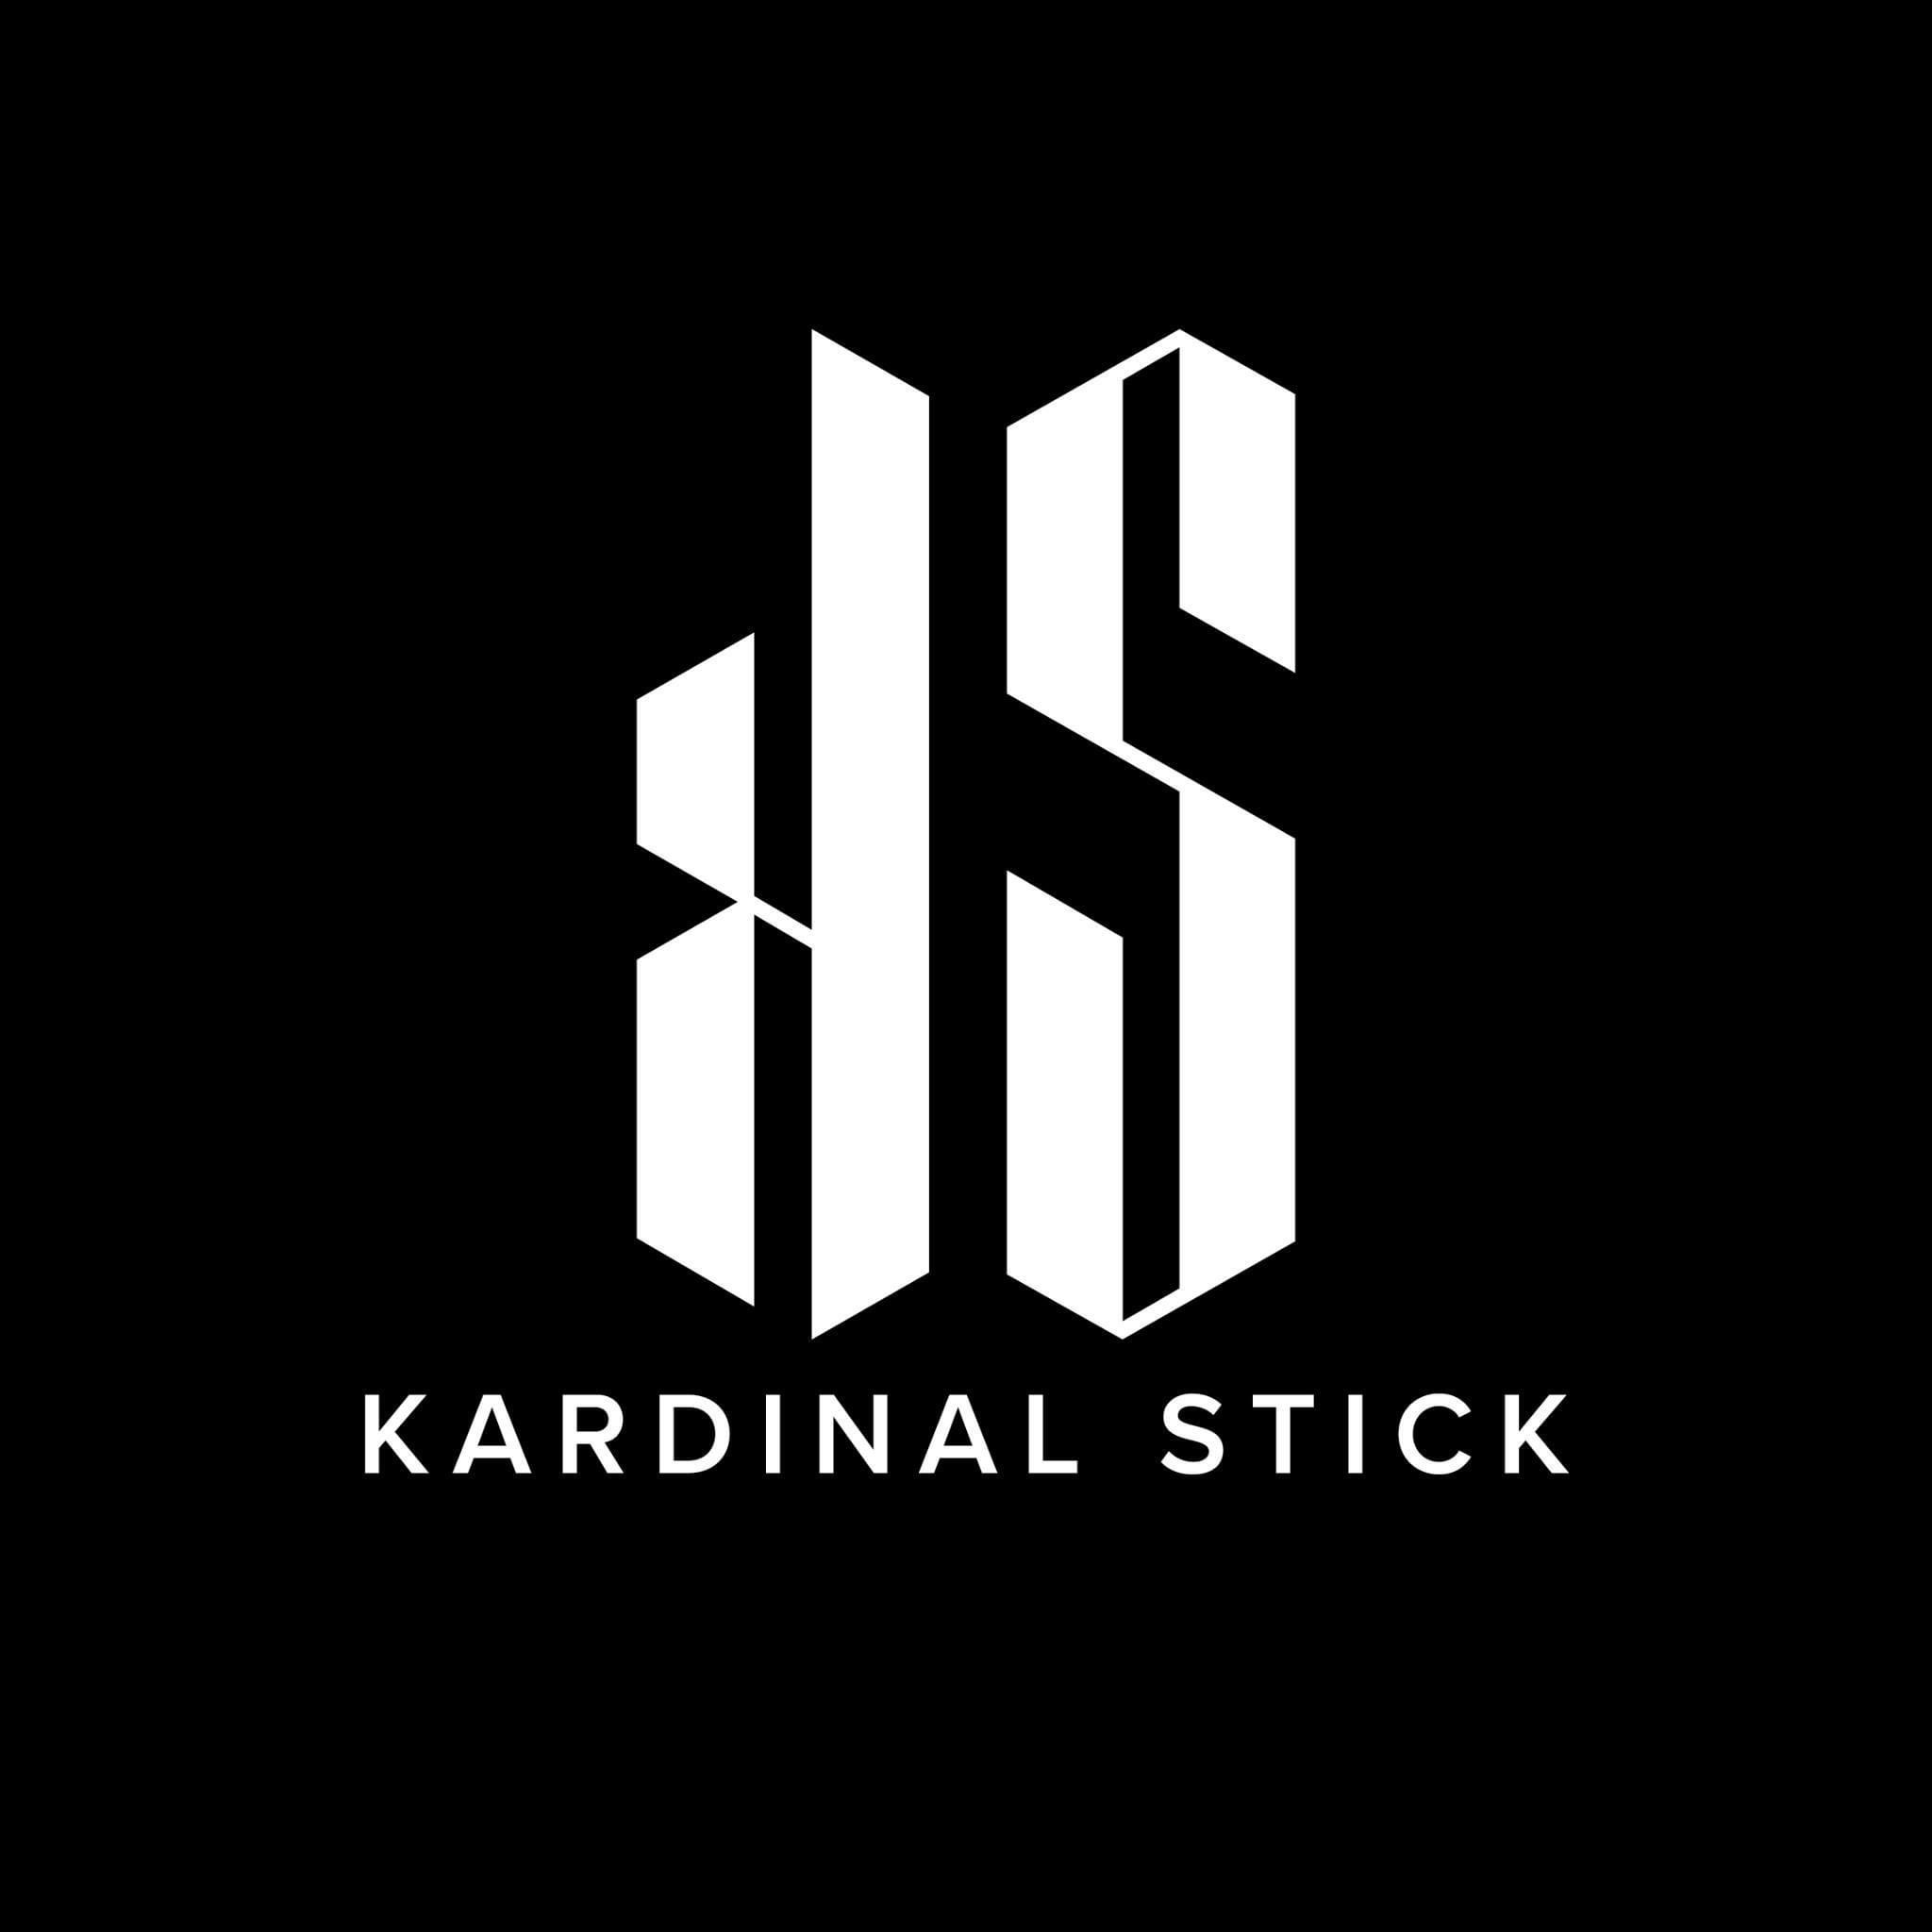 Kardinal Stick – KS KARDINAL STICK และ KS POD อุปกรณ์เลิกบุหรี่ เจ้าใหญ่ในไทย ส่งด่วนทั่วกรุงเทพ ราคาถูก พร้อมรับสมัครตัวแทนจำหน่าย